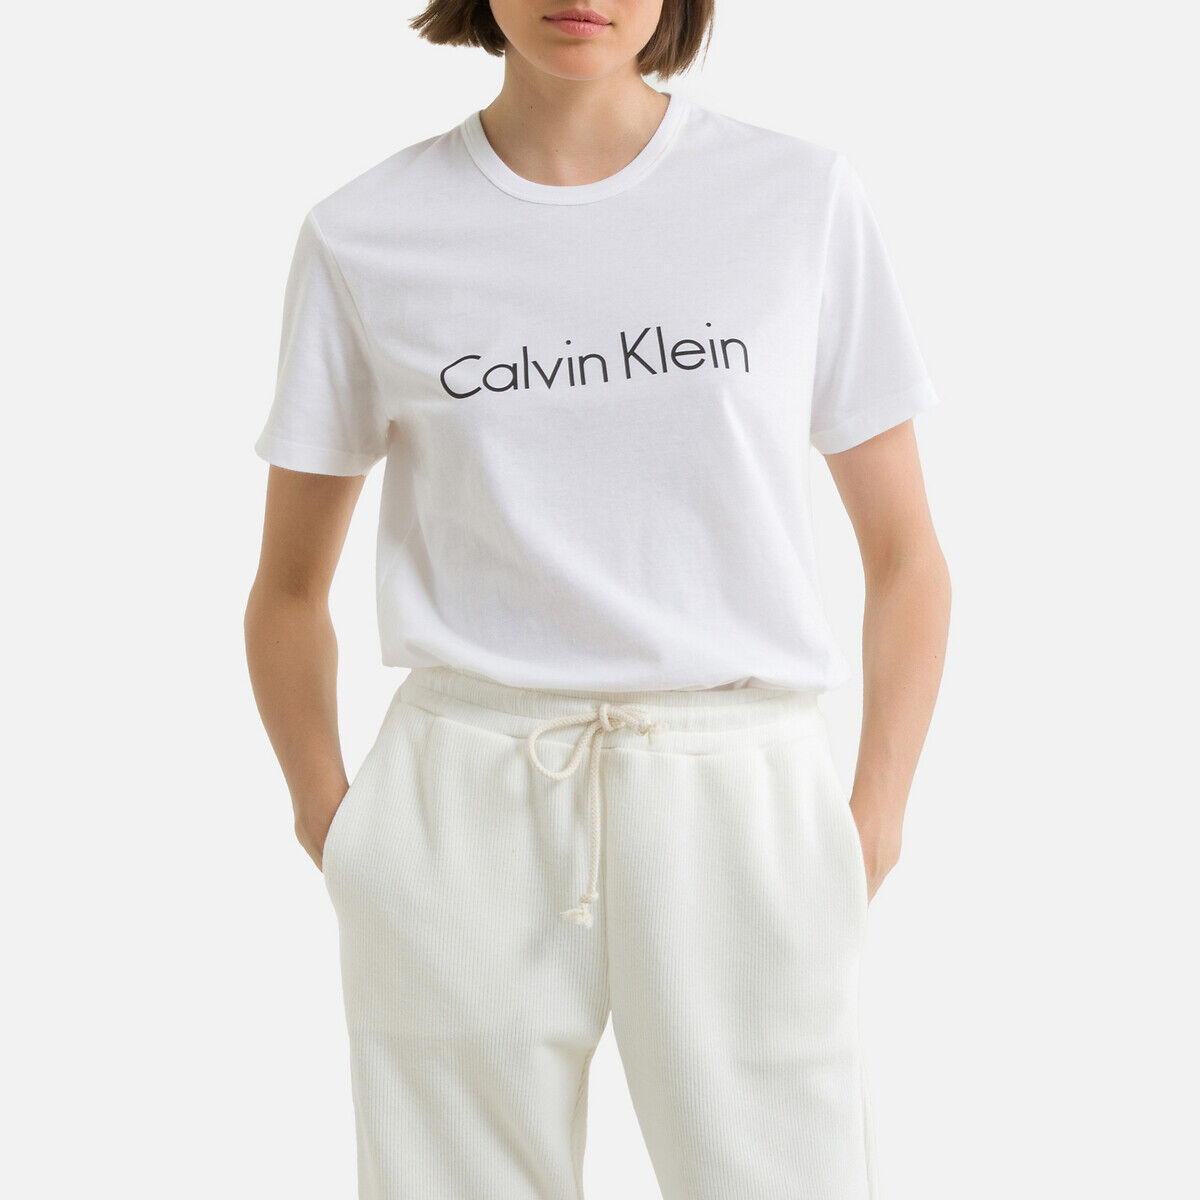 CALVIN KLEIN UNDERWEAR T shirt ras de cou CALVIN KLEIN